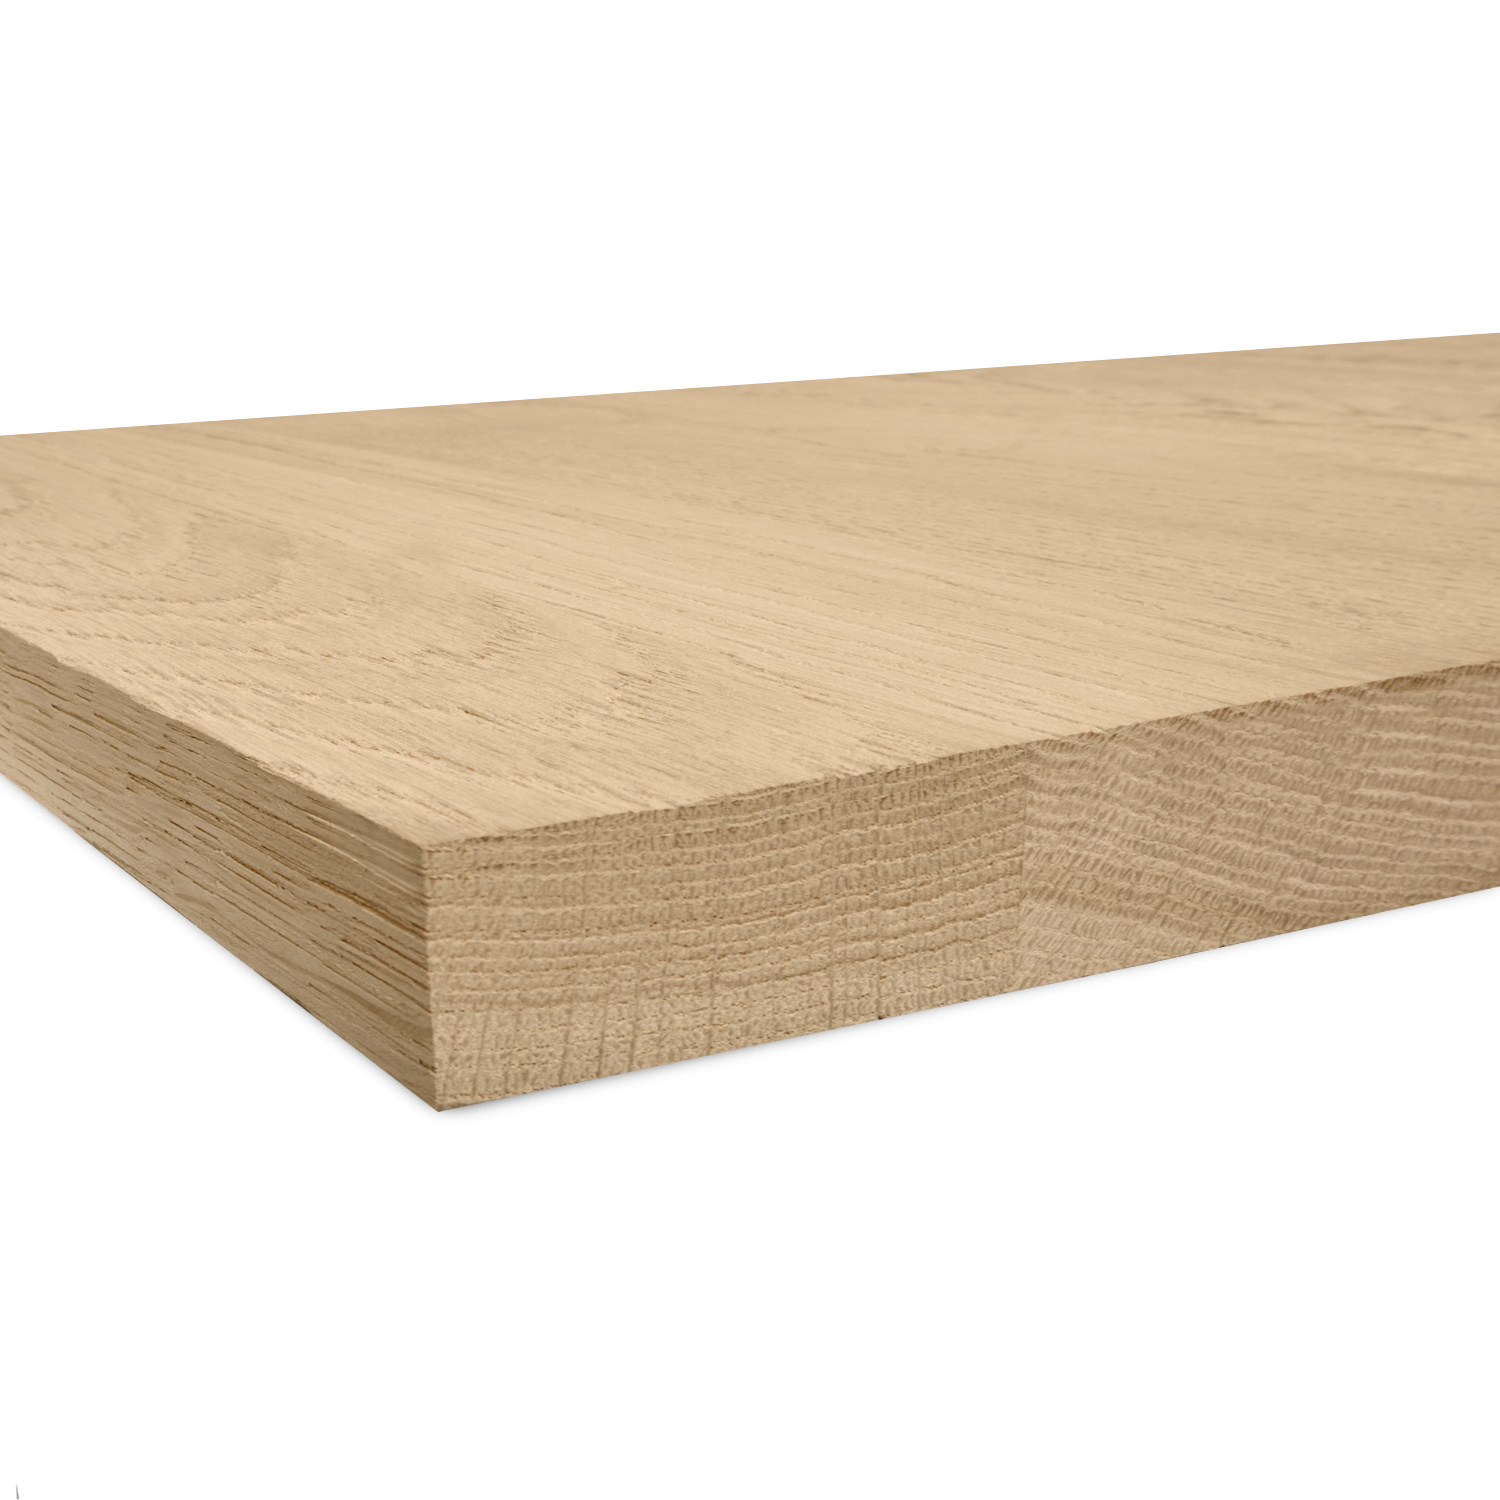  Leimholzplatte Eiche nach Maß - 4 cm dick - Eichenholz A-Qualität- Sandgestrahlt - Eiche Massivholzplatte - verleimt & künstlich getrocknet (HF 8-12%) - 15-120x20-350 cm